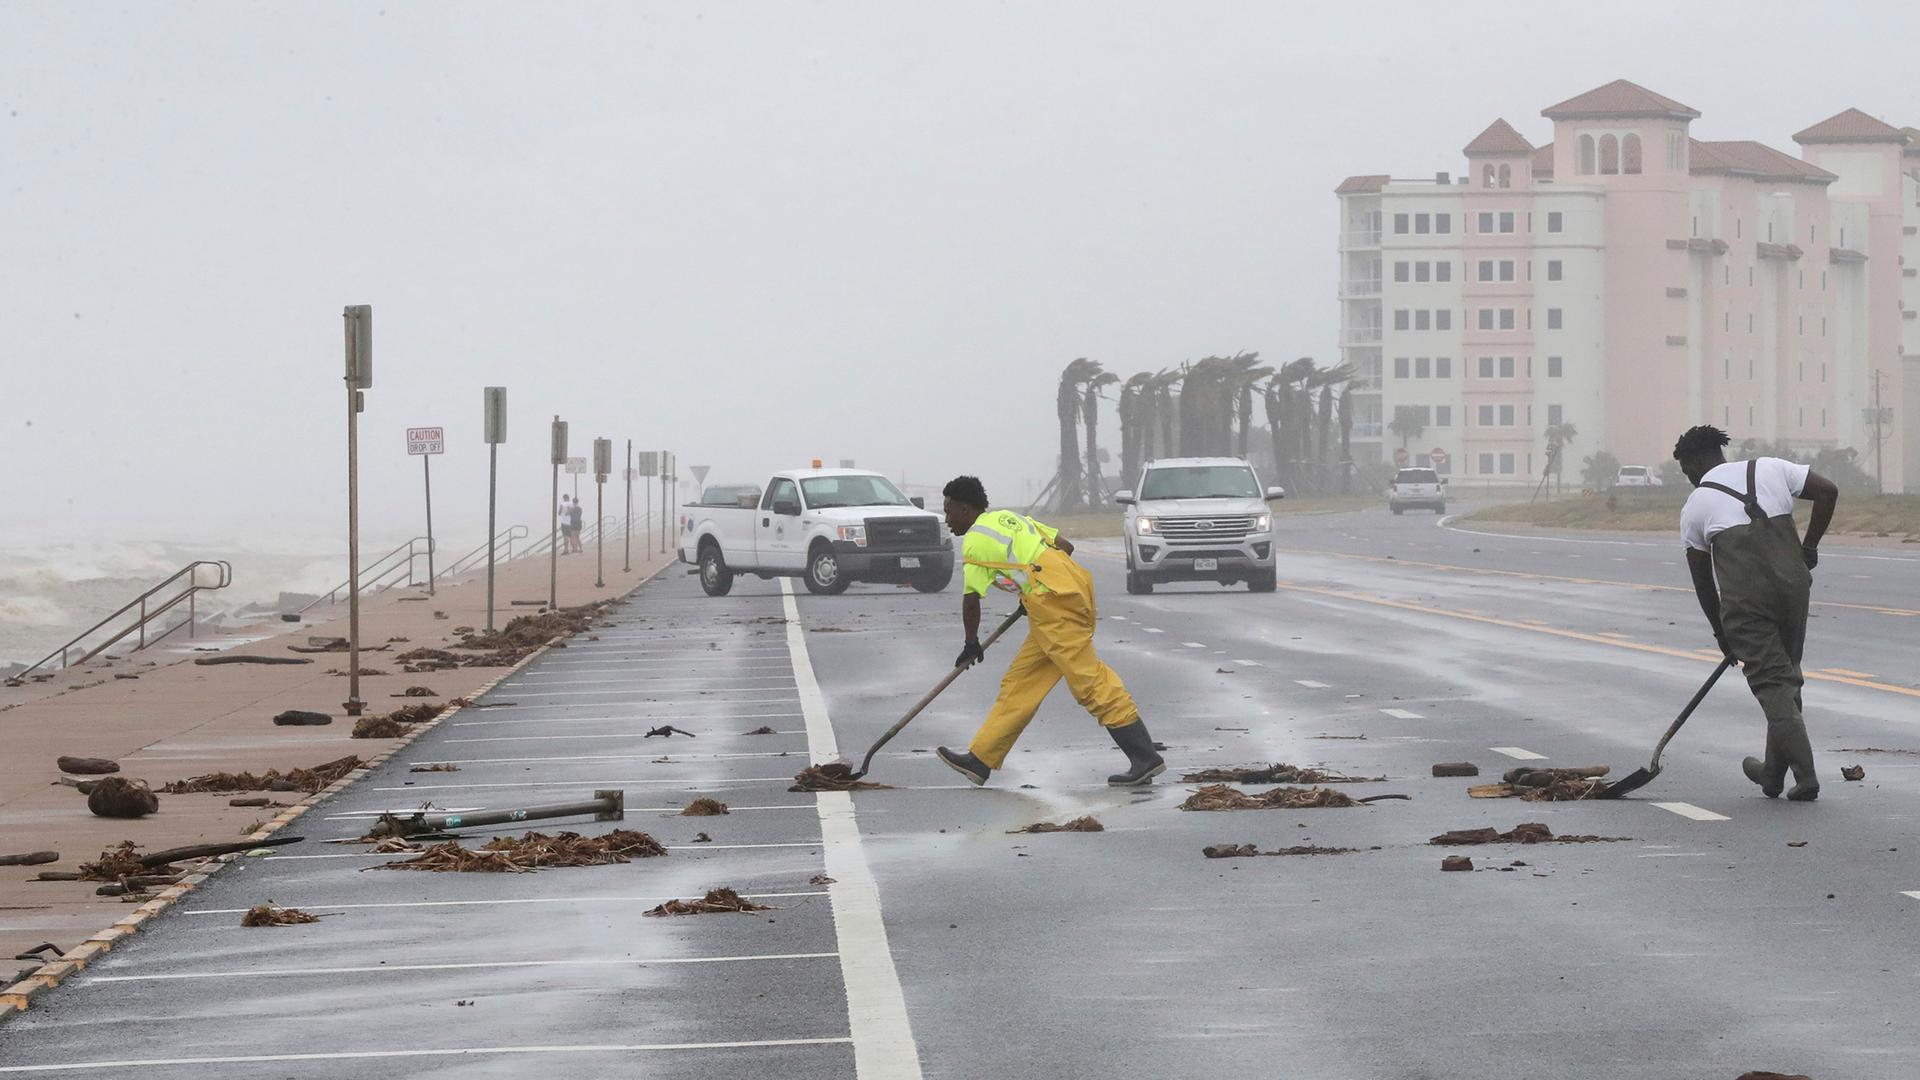 Arbeiter in Galveston säubern eine Straße, nachdem der Sturm "Beryl" über die Küste von Texas gezogen ist. 